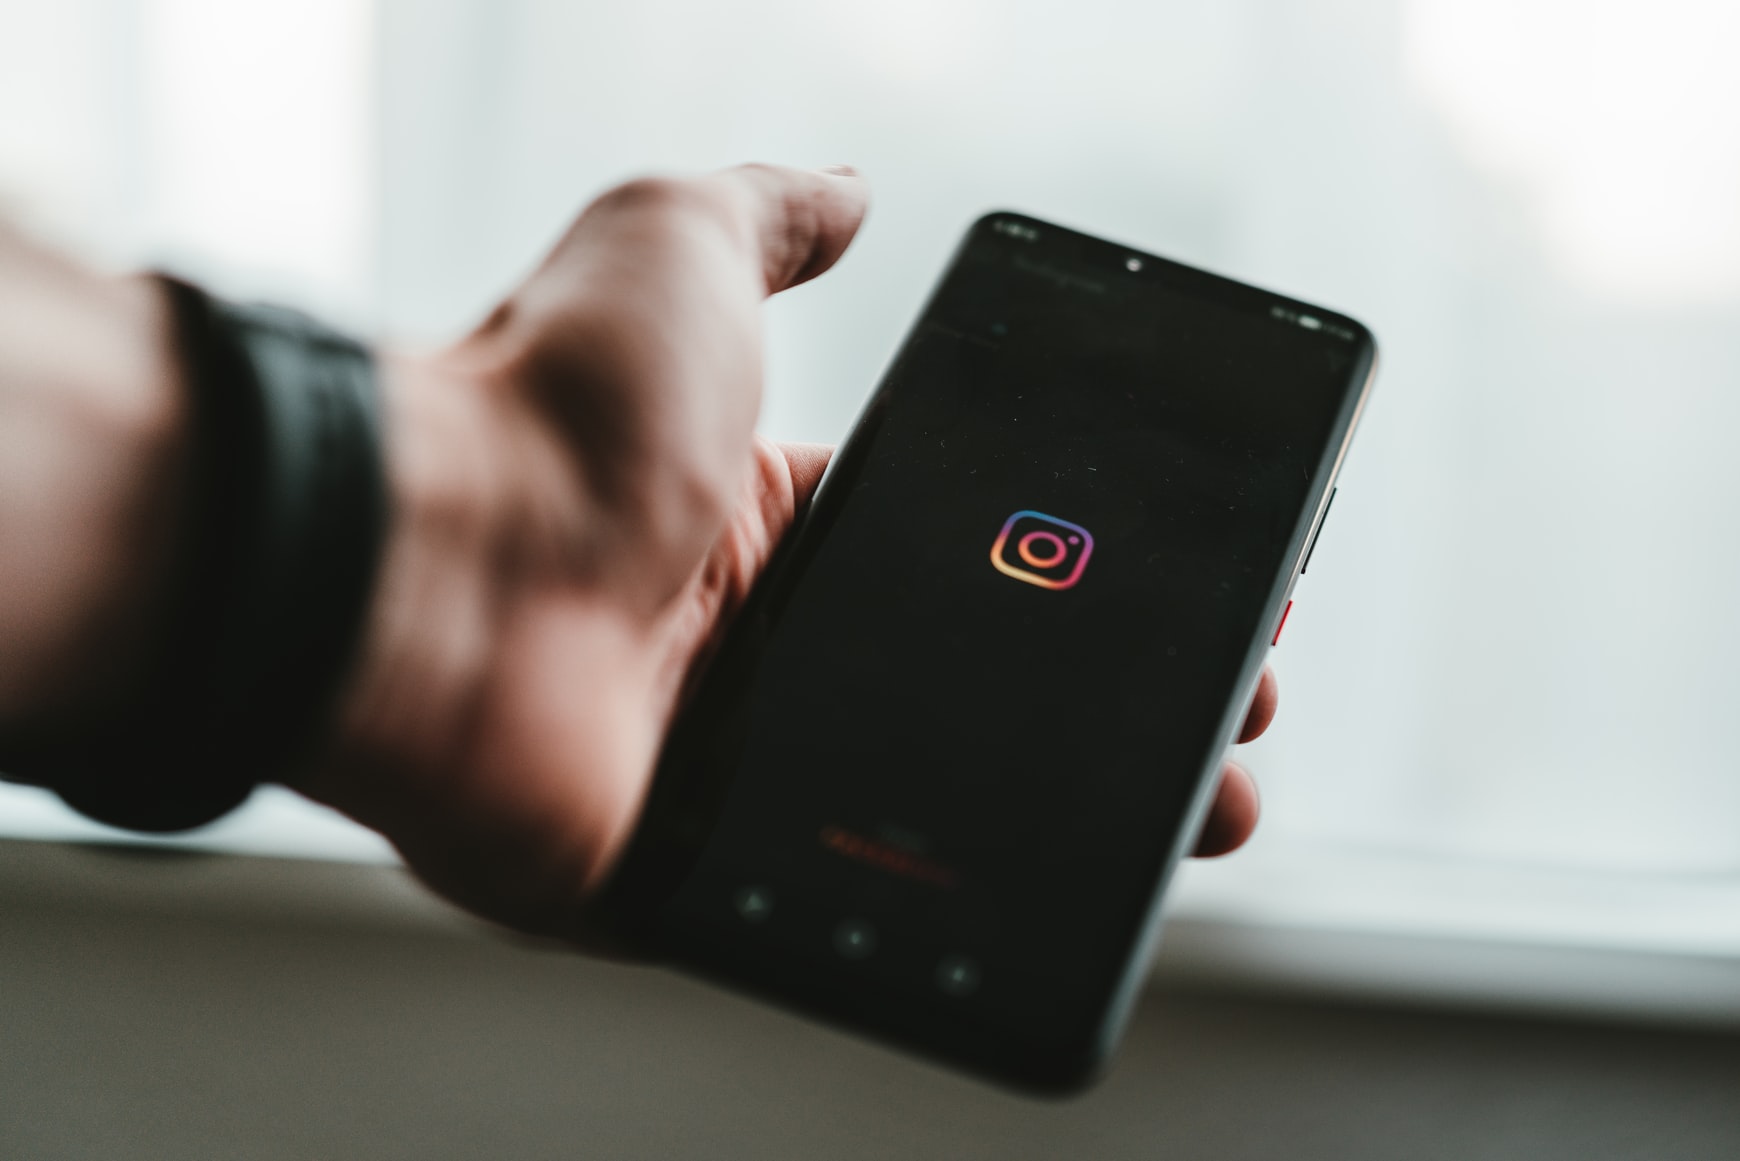 Instagram pourrait vous laisser choisir comment s'afficheront vos photos sur votre profil